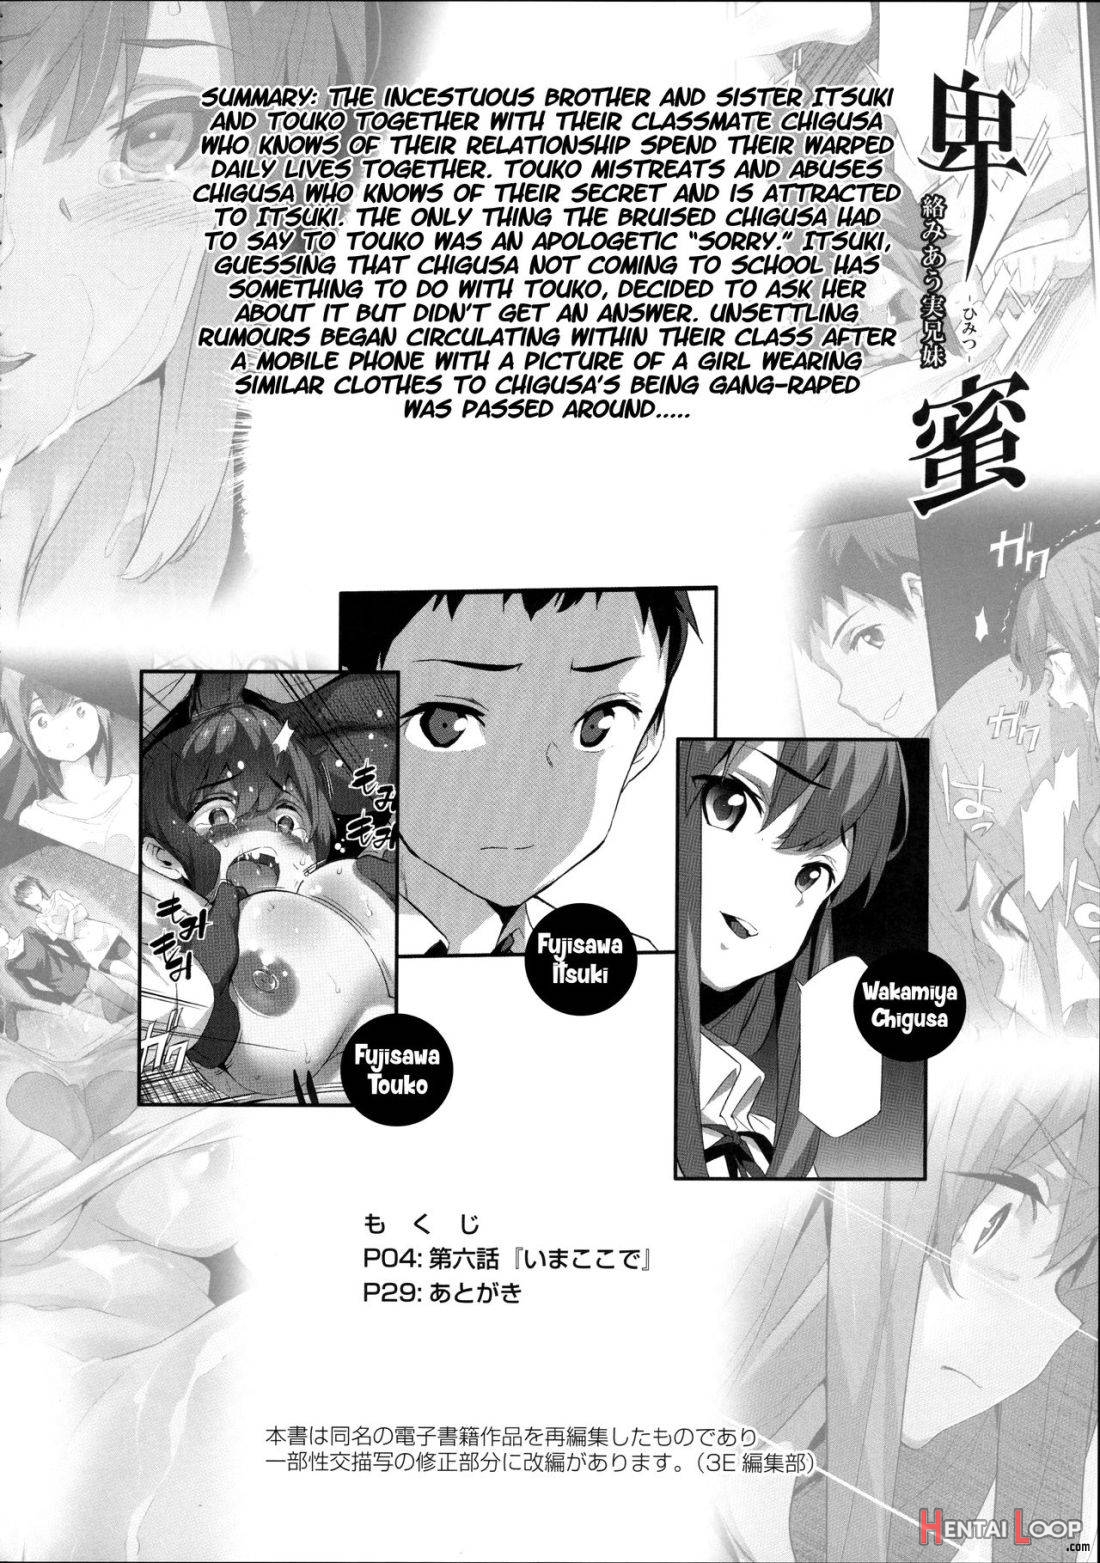 Himitsu 06 “ima Koko De” page 2